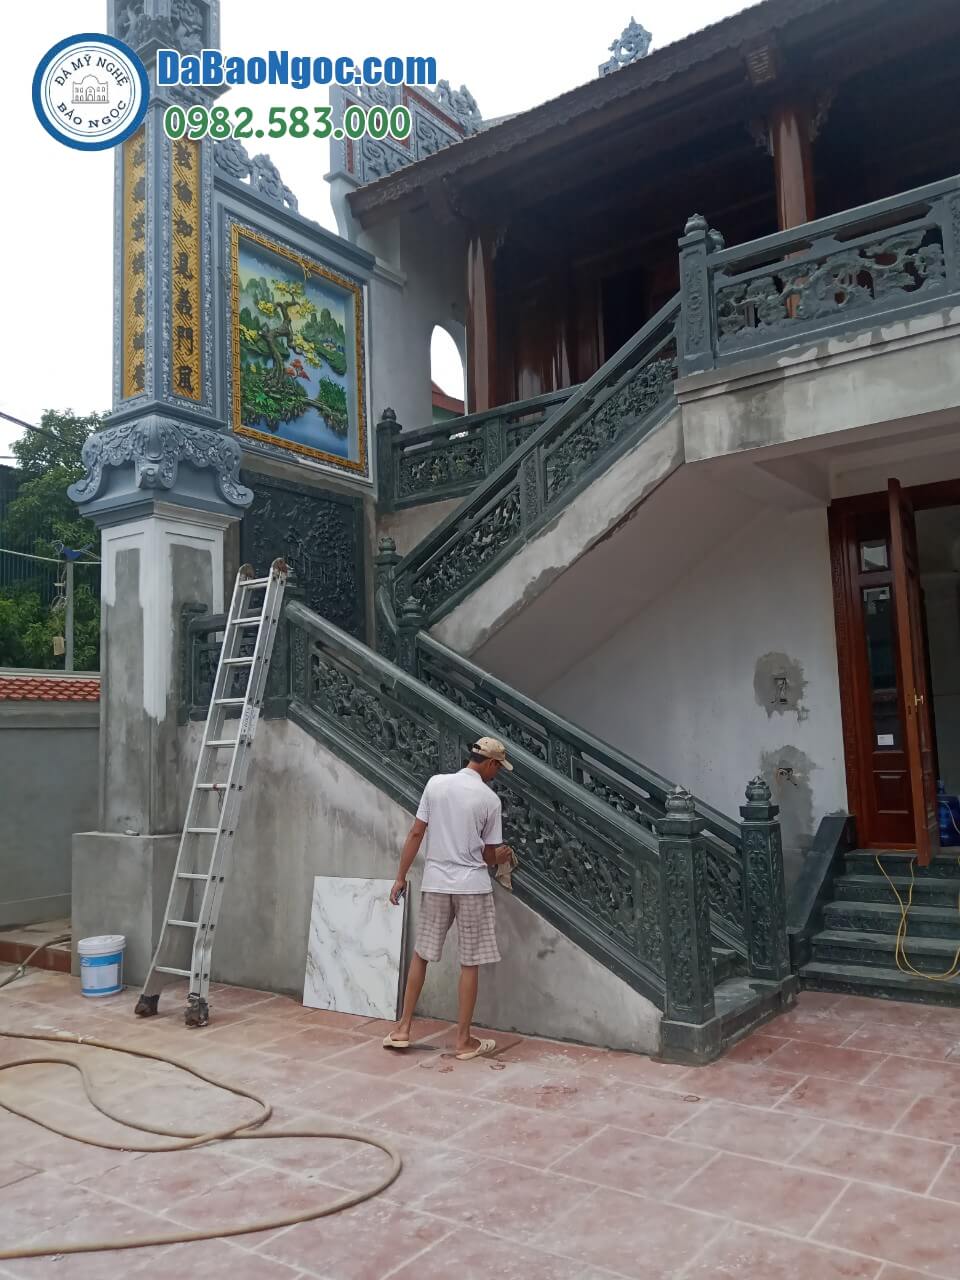 Cơ sở thiết kế, thi công, chuyên xây dựng Nhà thờ họ ở Lào Cai rẻ đẹp